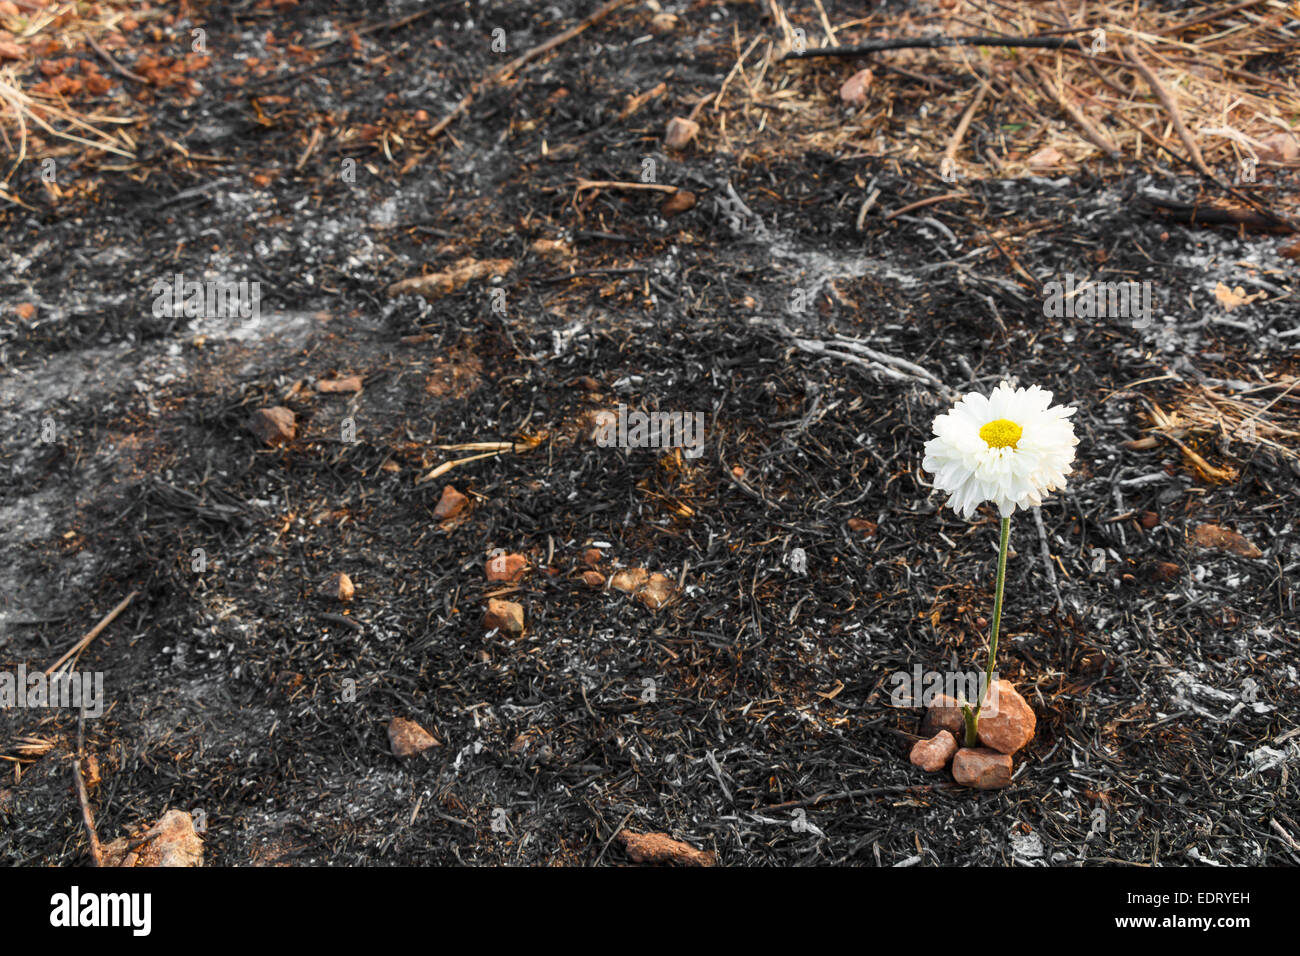 Flor blanca pueden sobrevivir en cenizas de césped quemado debido a incendios forestales Foto de stock